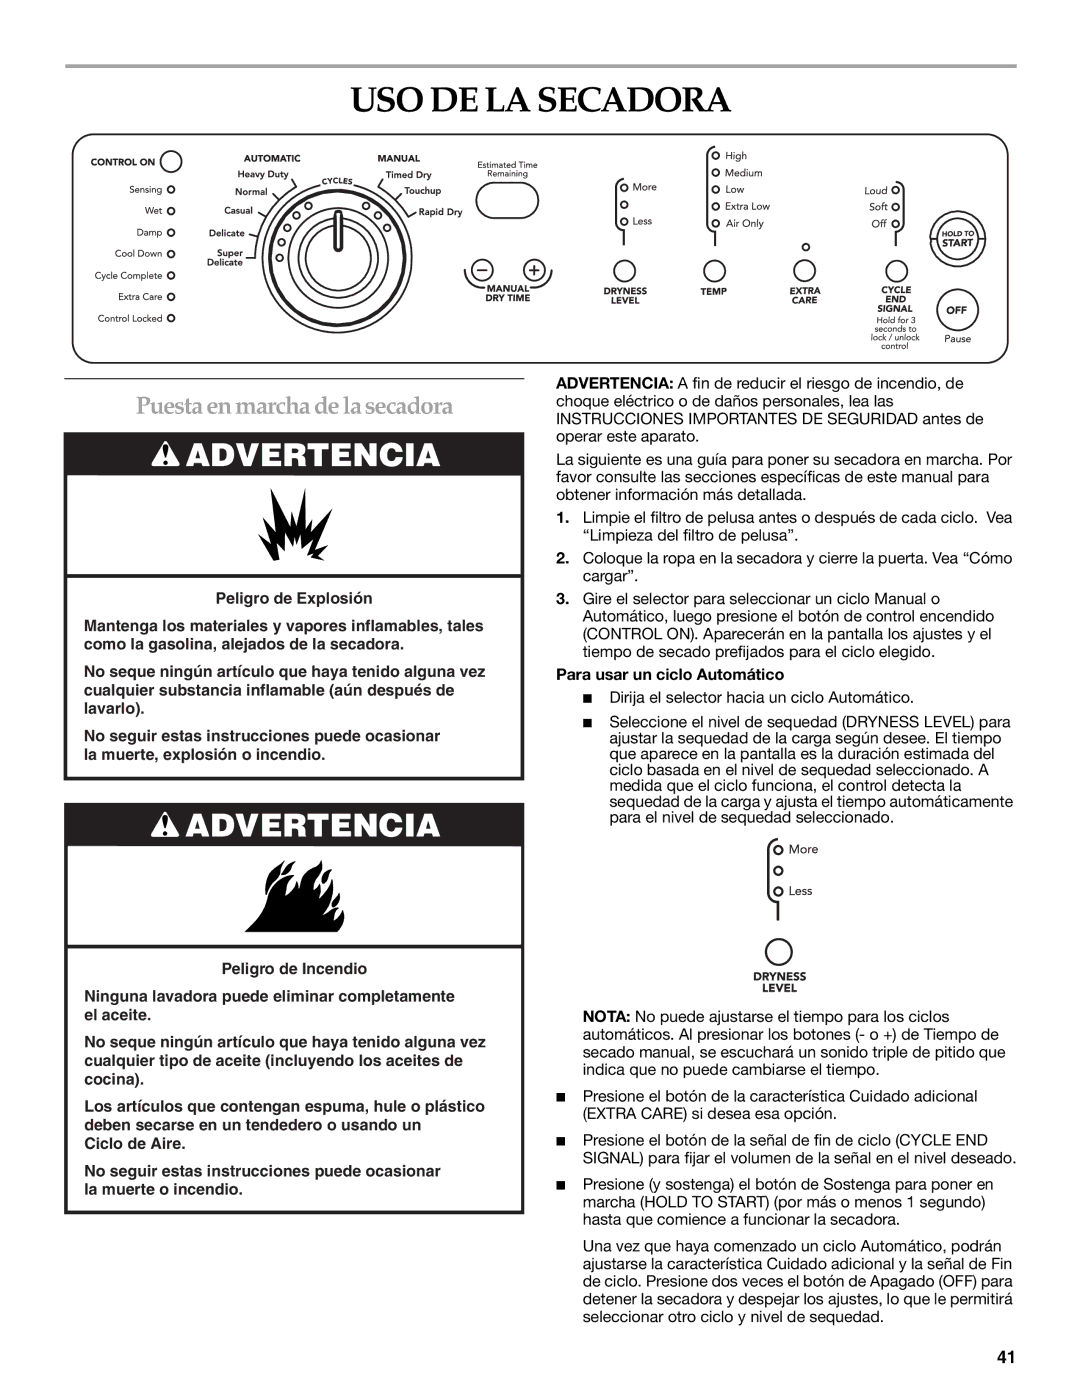 KitchenAid YKEHS01P manual USO DE LA Secadora, Puesta en marcha de la secadora, Para usar un ciclo Automático 